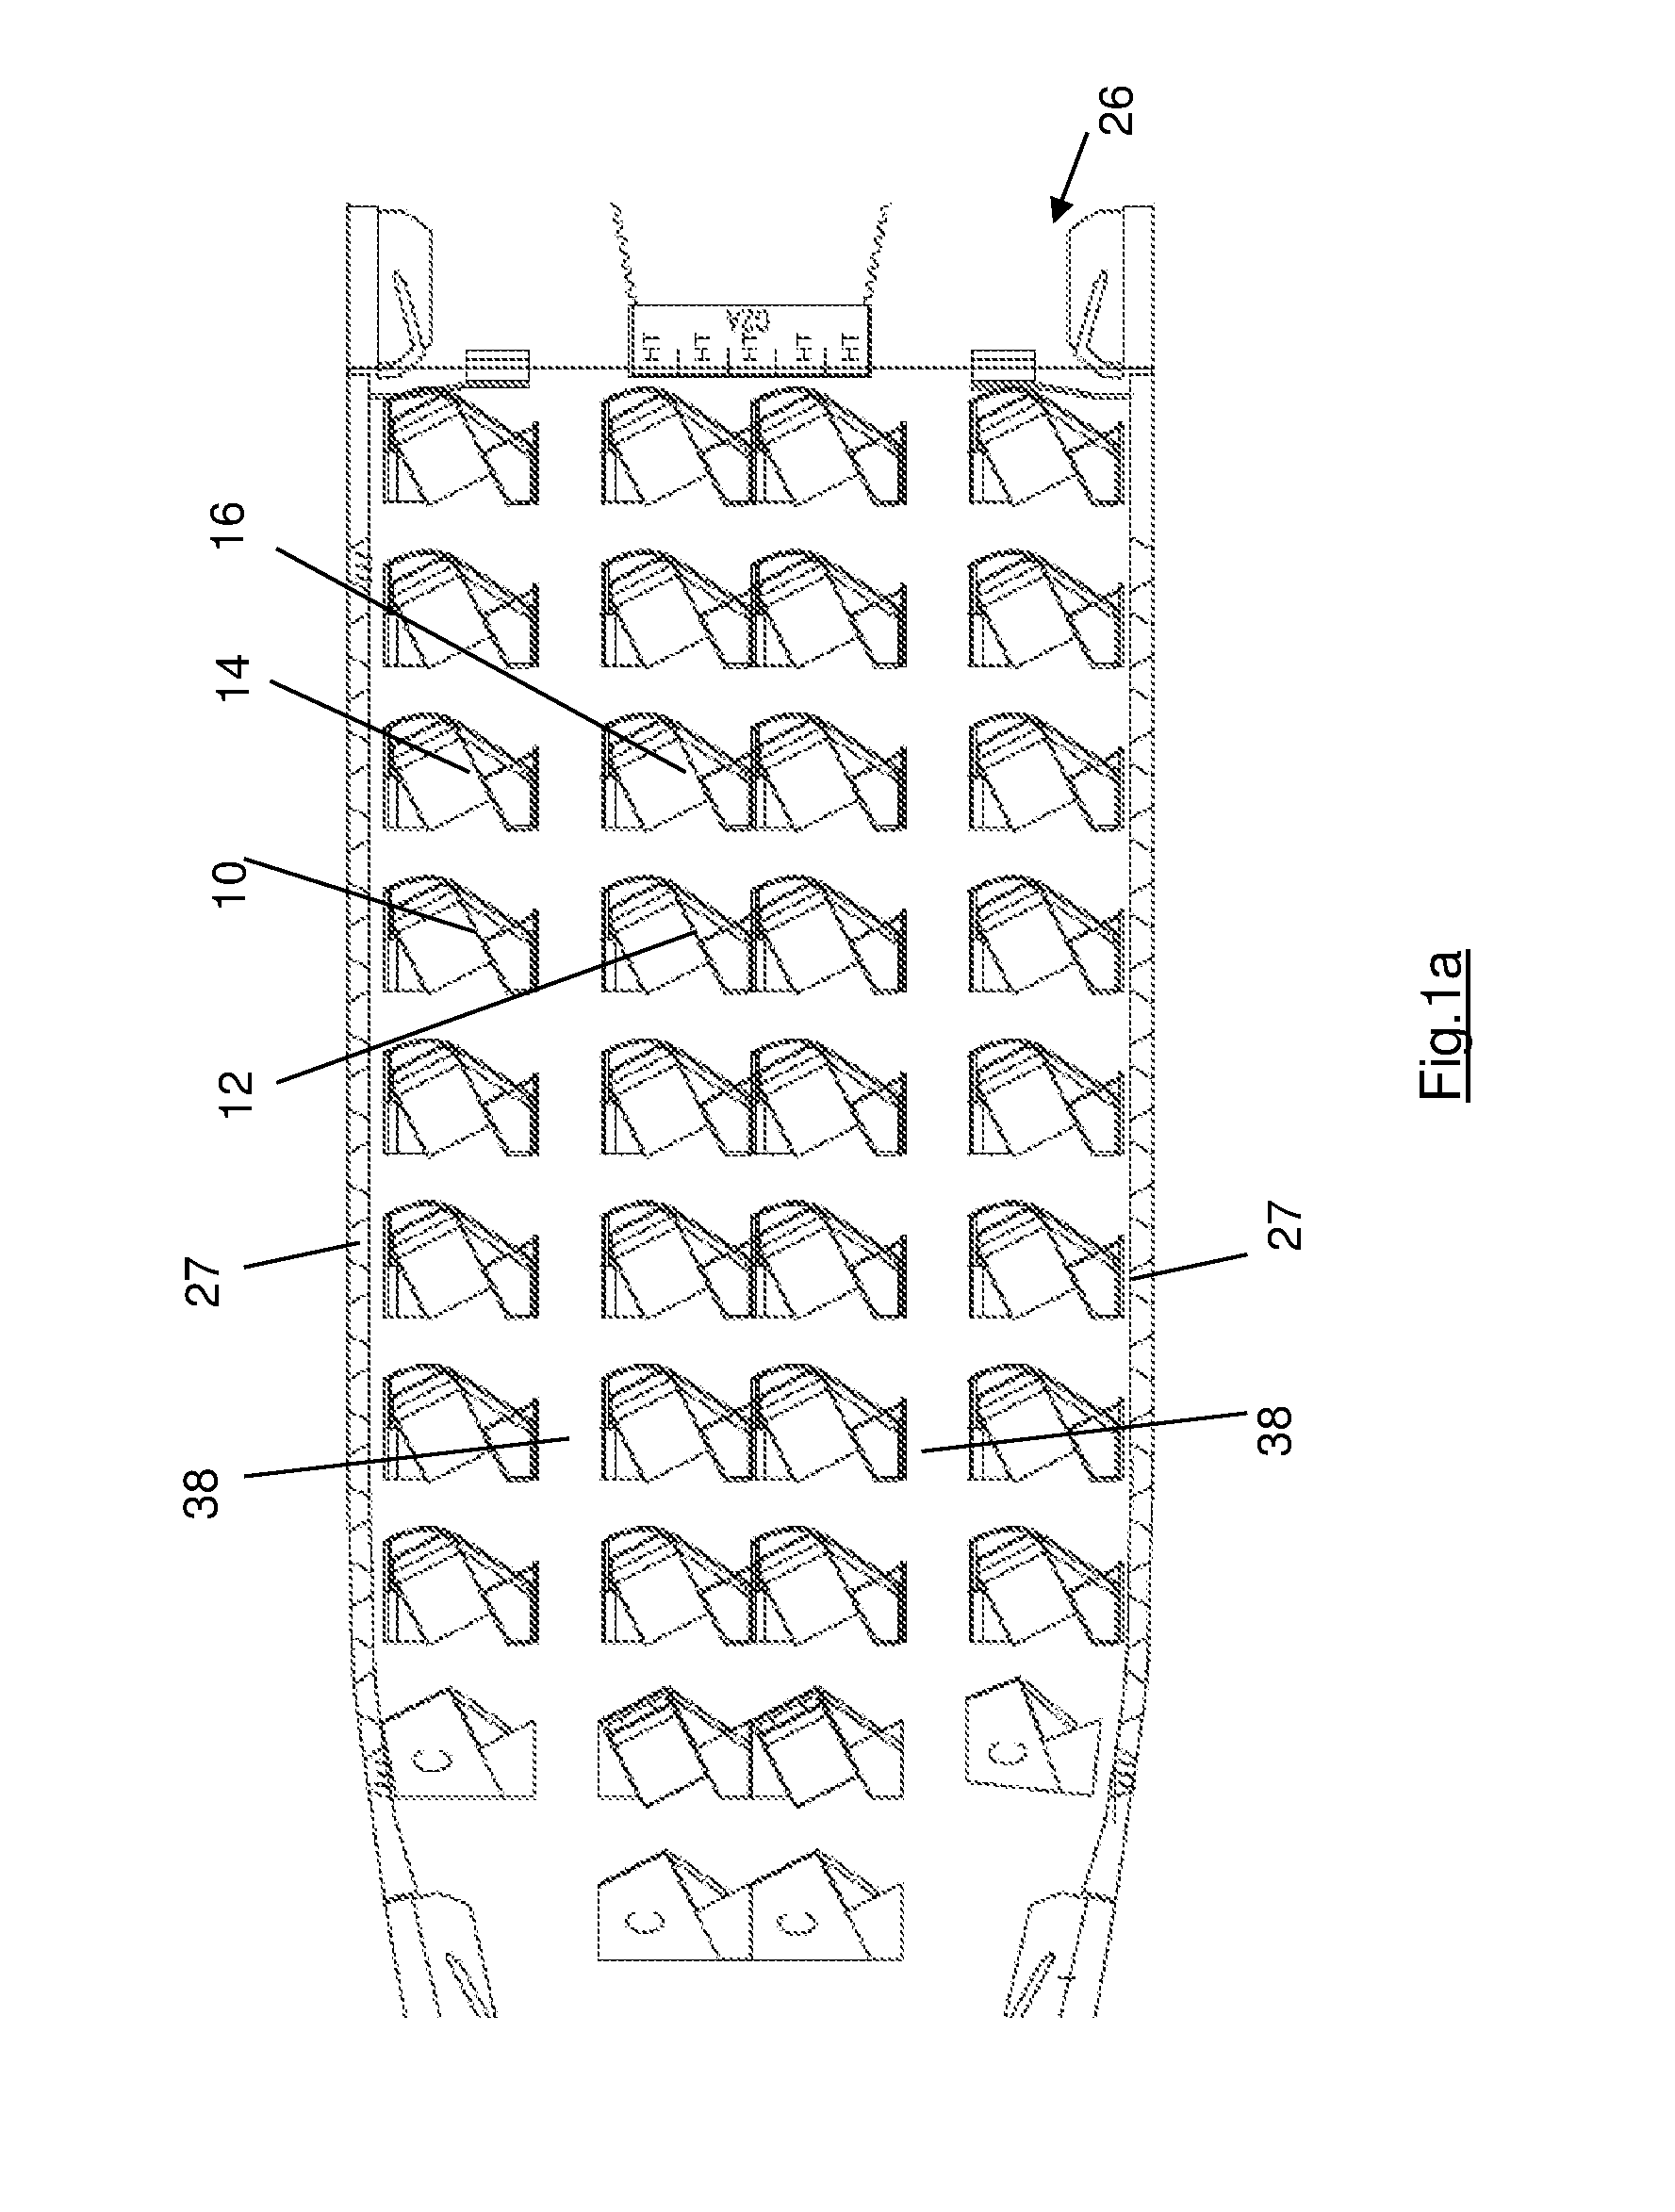 High density aircraft seat arrangement